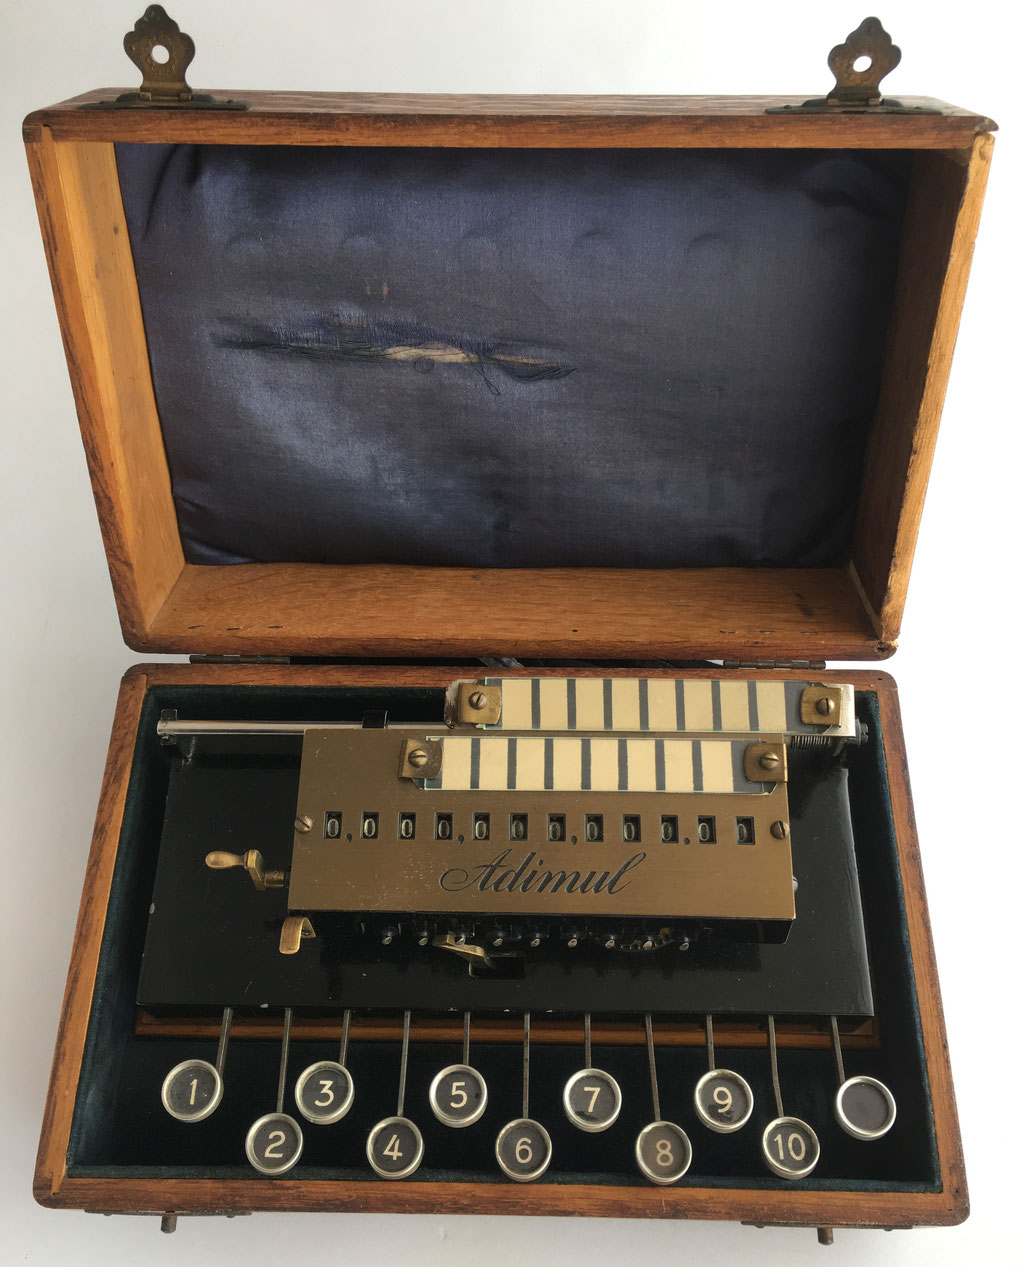 Calculadora ADIMUL, hecha por Adix Company Pallweber & Bordt, Mannheim, nº serie 1012, año 1909. Es la "KULI" comercializada en Francia con el nombre ADIMUL. Precio estimado 2500 €